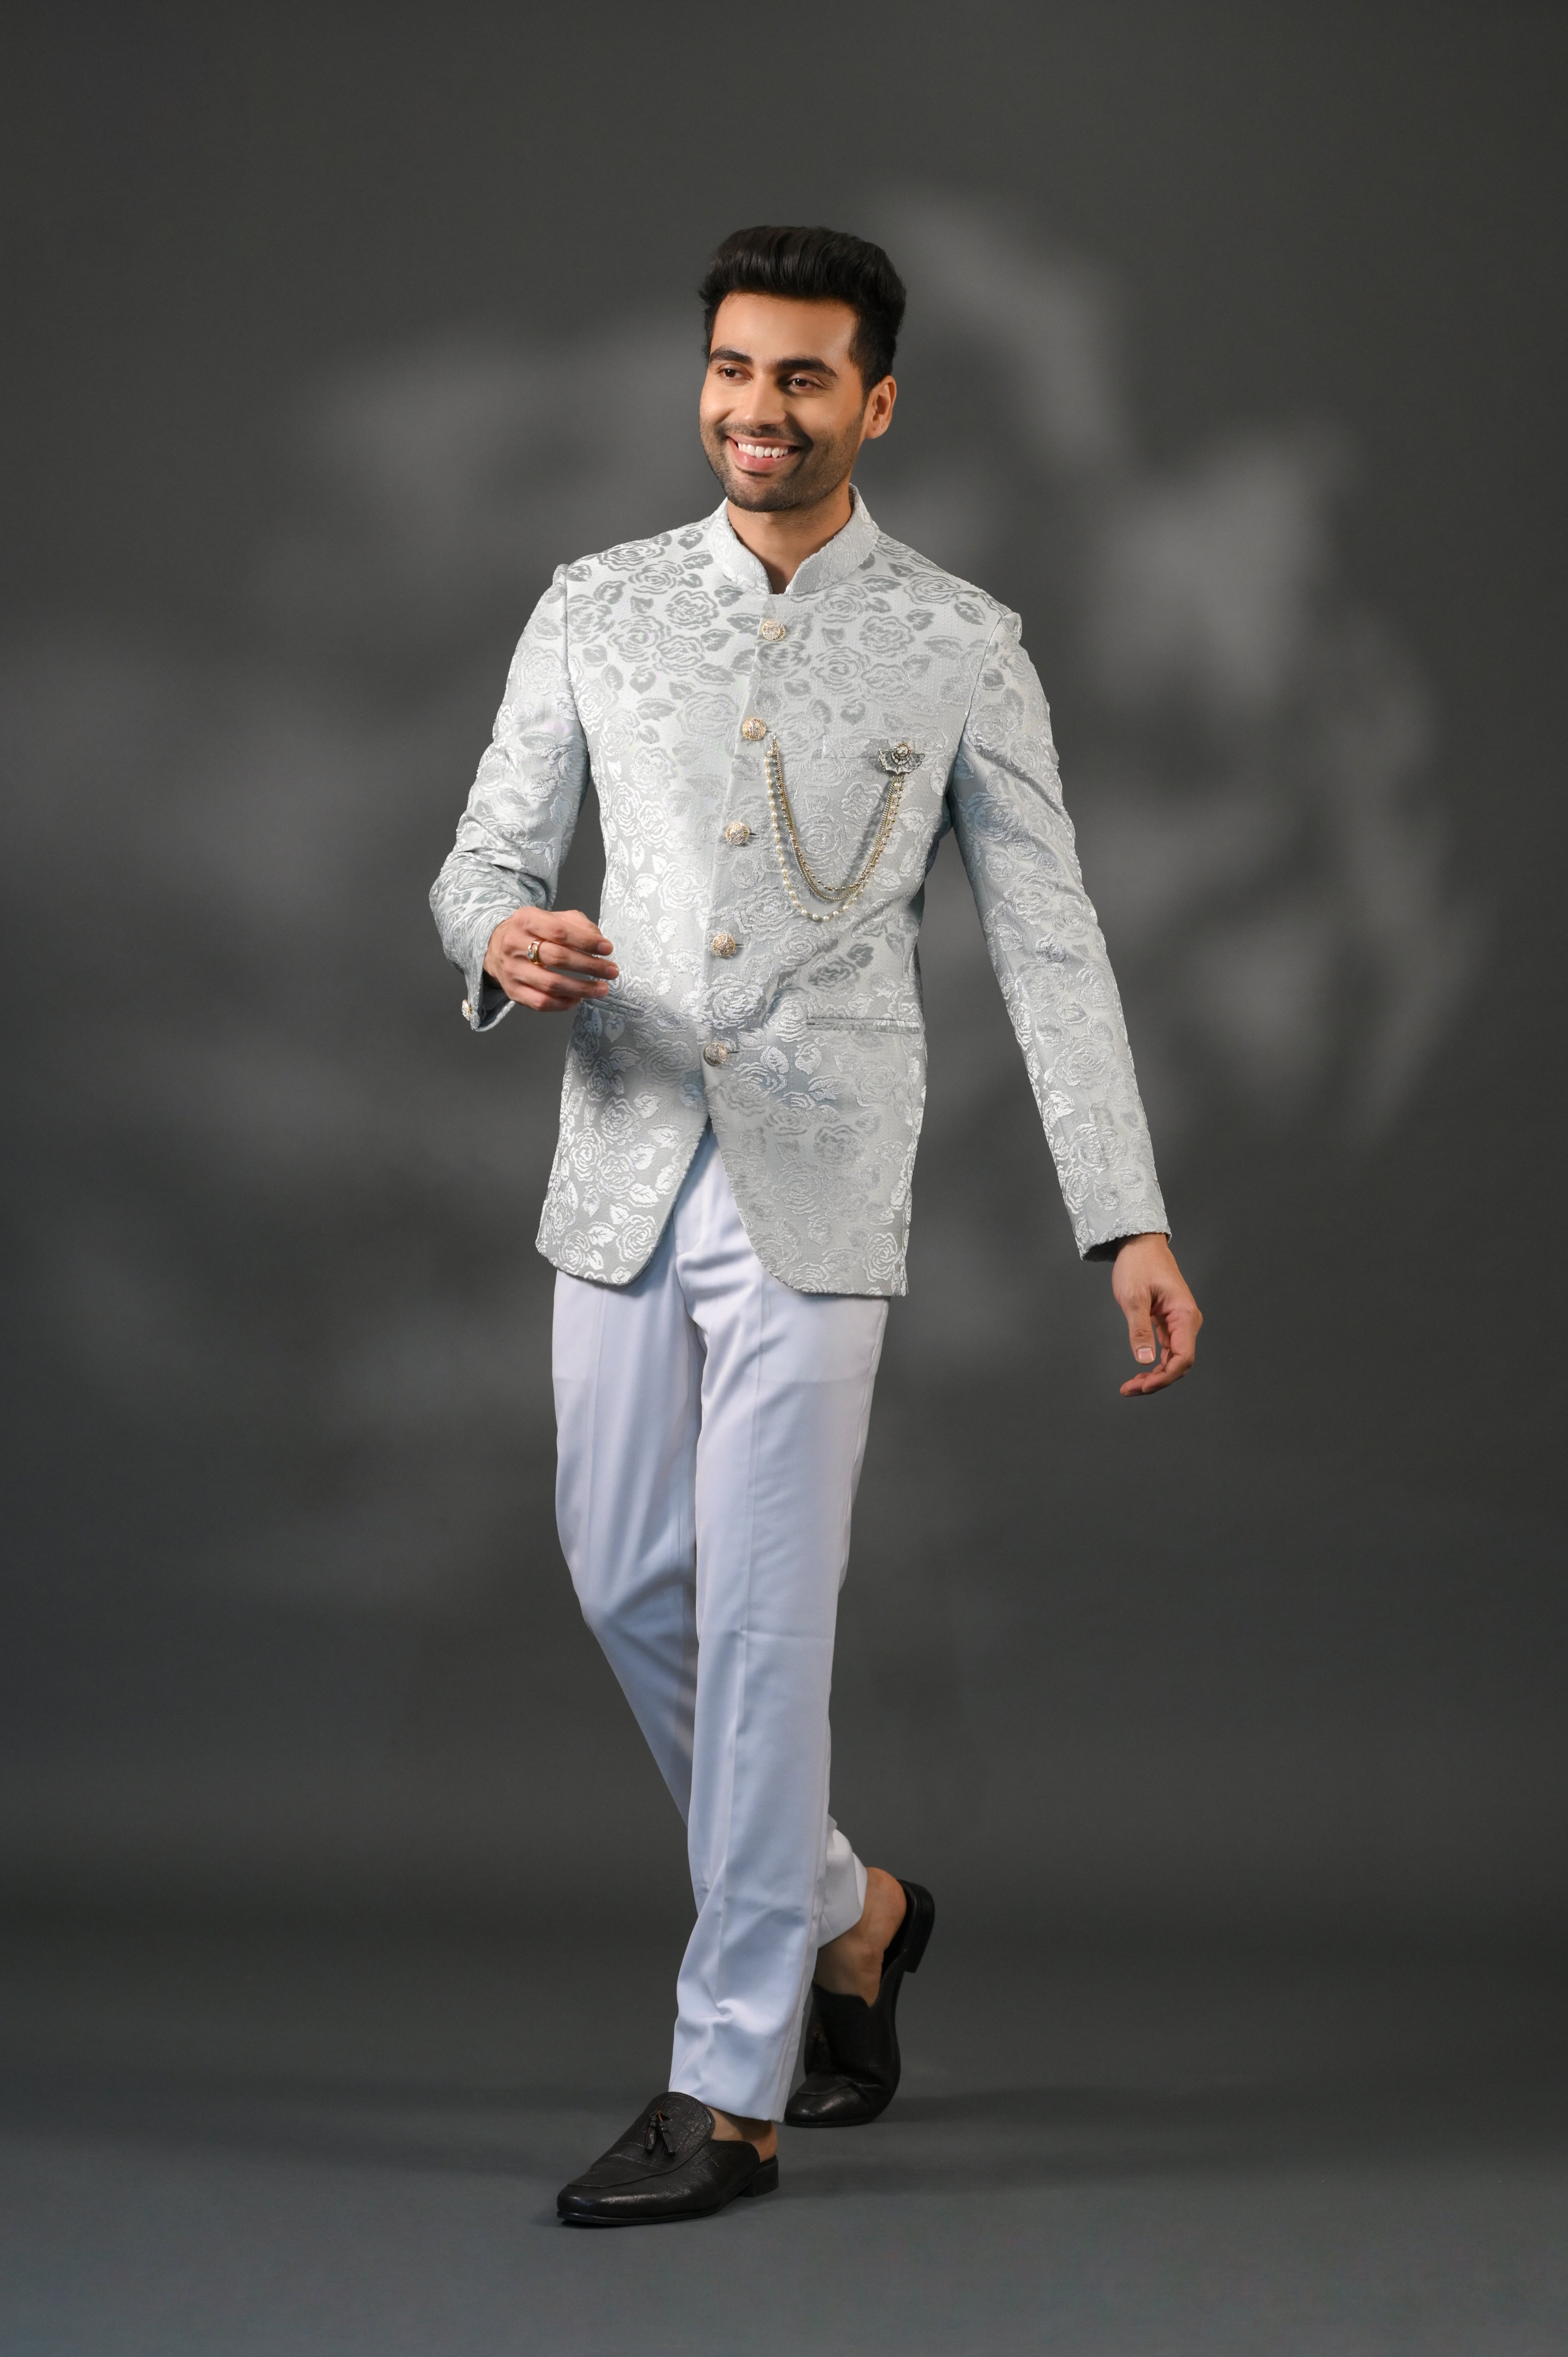 Latest New Jodhpuri Suit For Men 2020 | Jodhpuri Pant Coat 2020 | Jodhpuri  Suit For Men 2020 - YouTube